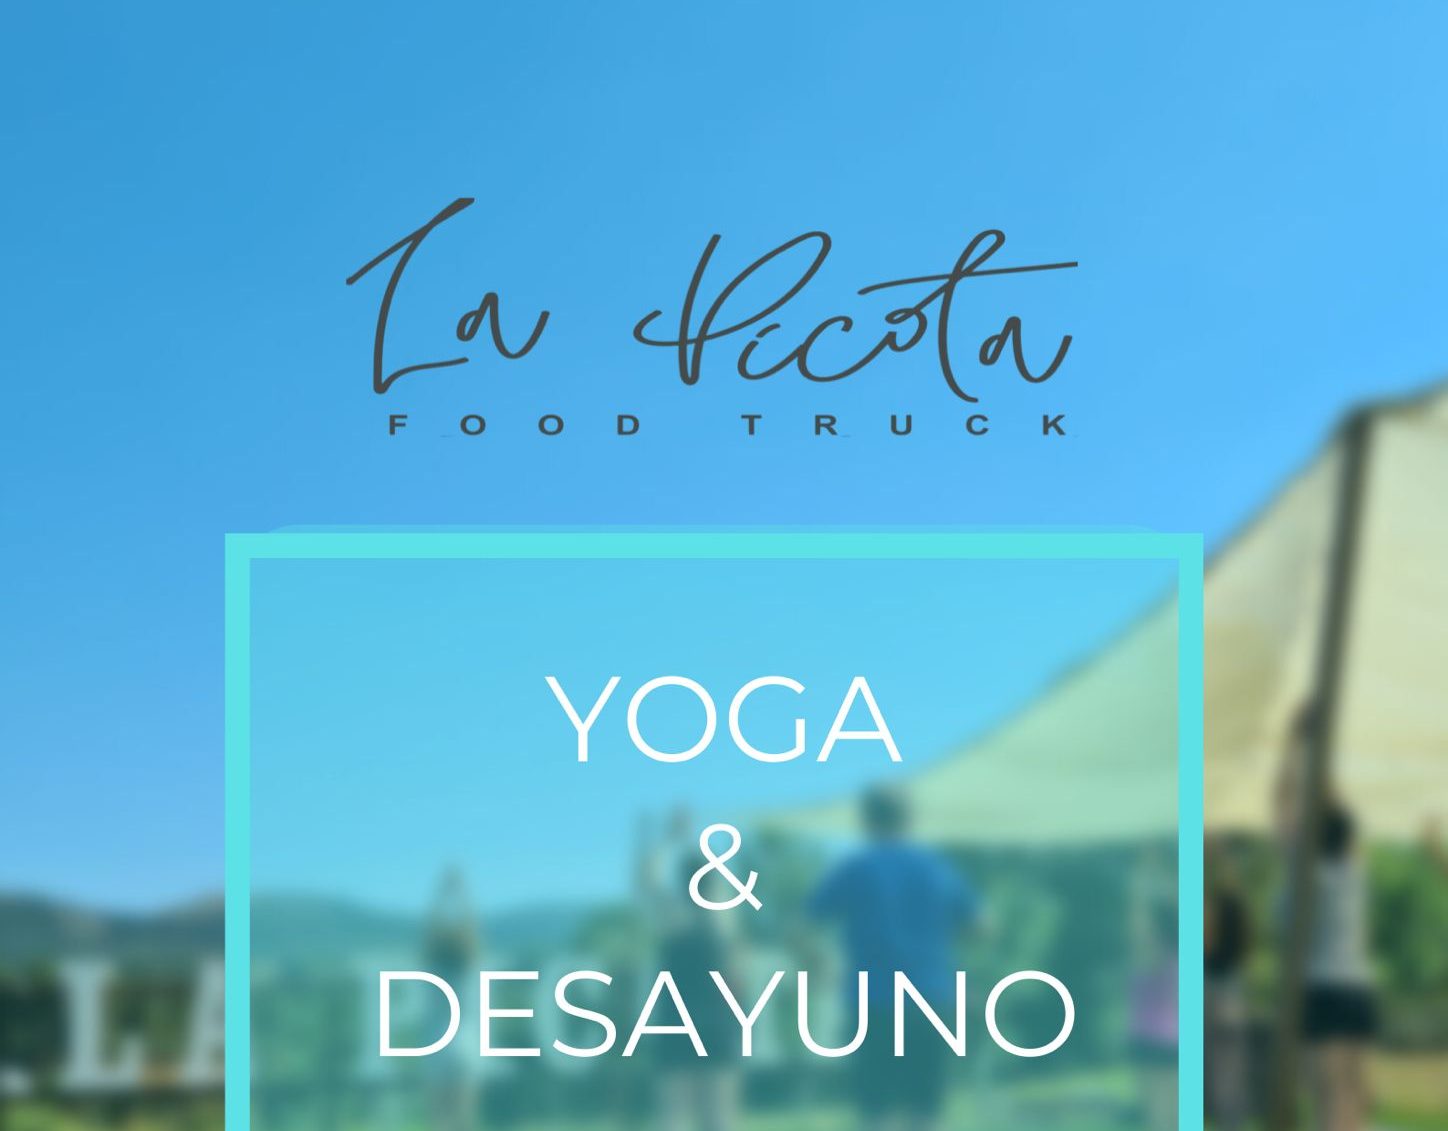 La terraza La Picota de Quilós organiza una mañana de domingo con yoga y desayuno saludable 1